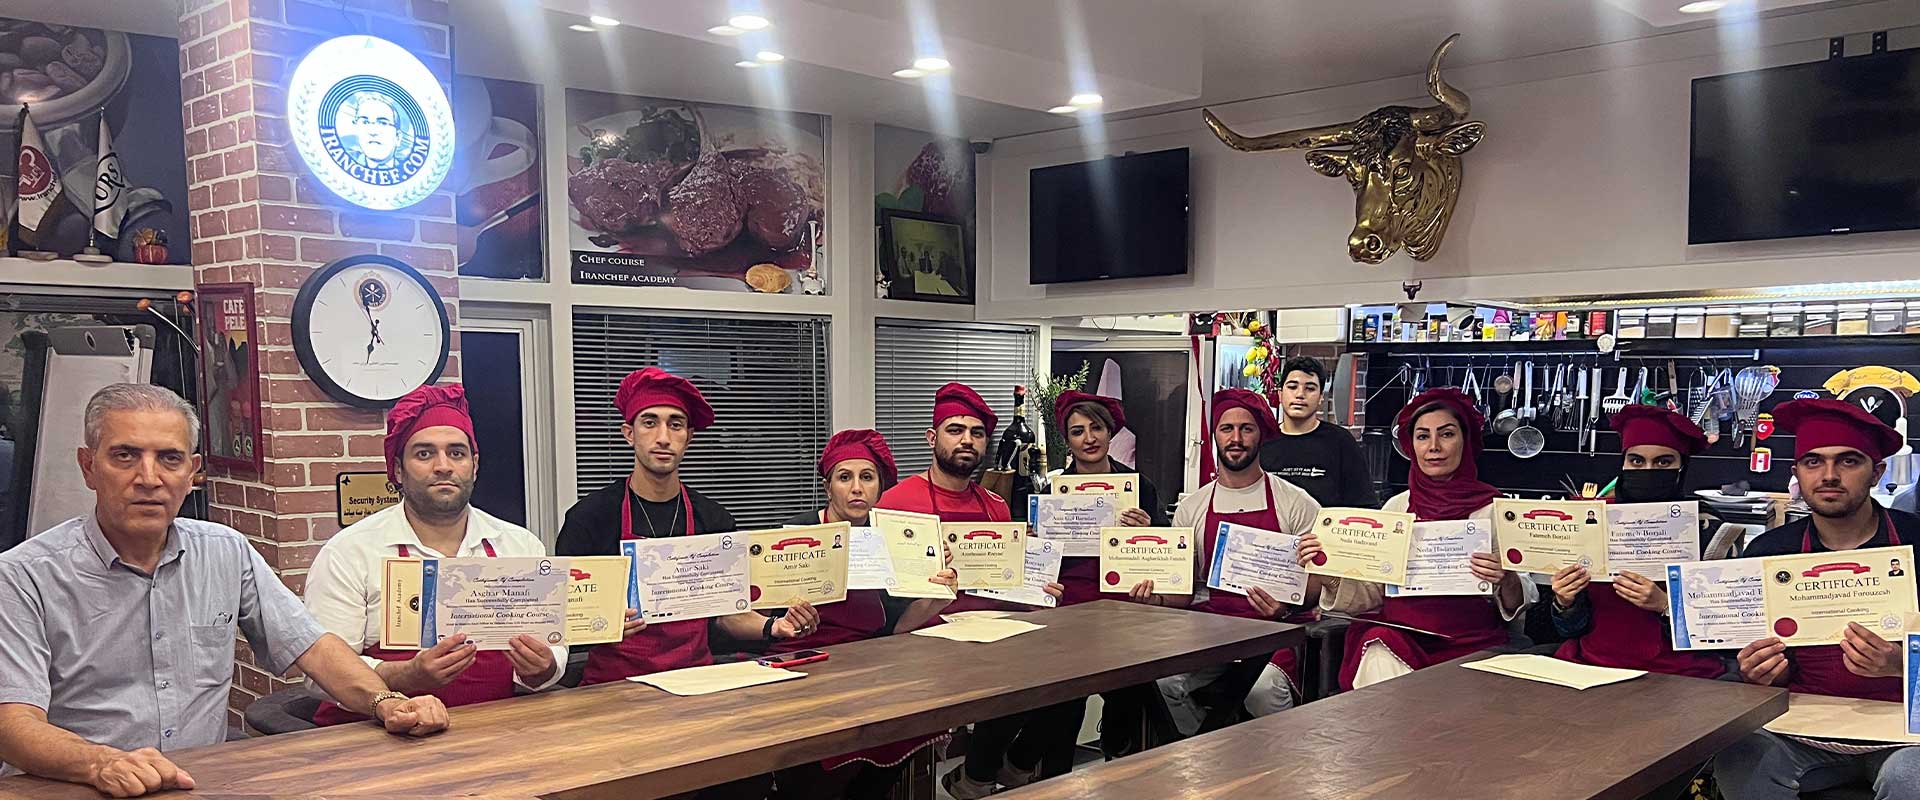 آموزش آشپزی ملل با مدرک معتبر - ایران شف مدرسه قهوه و آشپزی